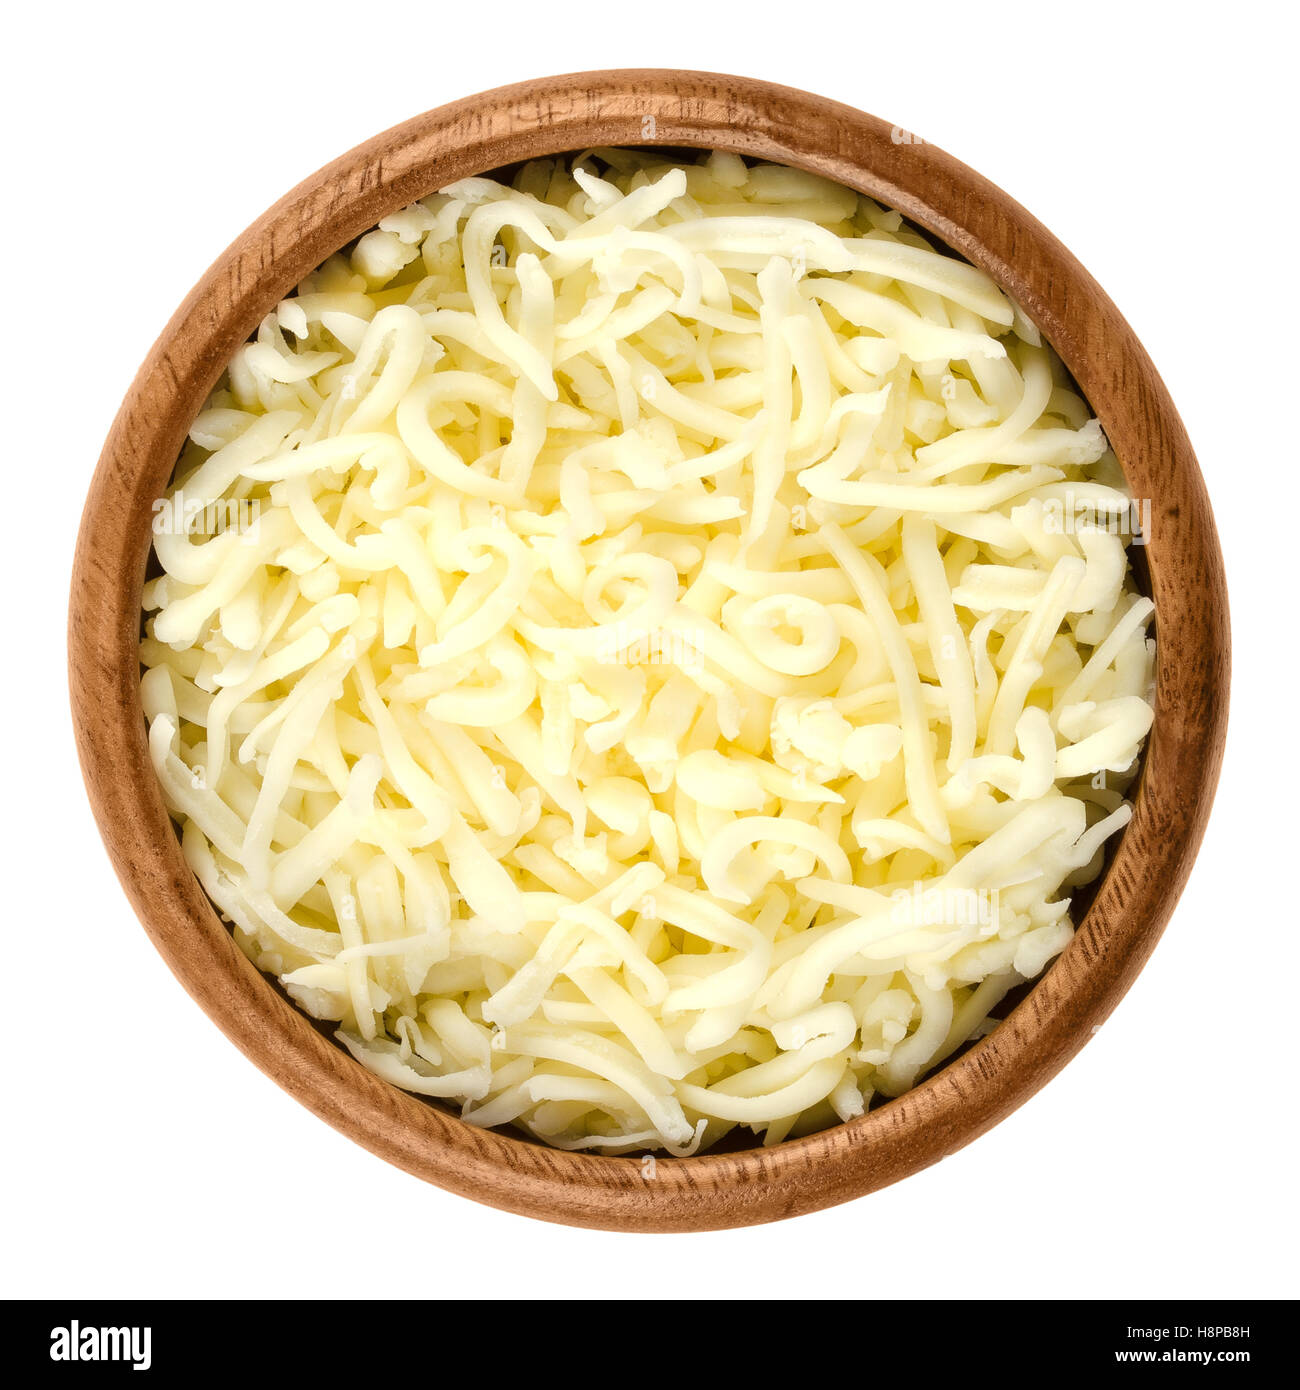 Shredded mozzarella Formaggio per pizza in ciotola di legno su bianco. Il cheddar come semi rigido formaggio italiano a base di latte. Foto Stock